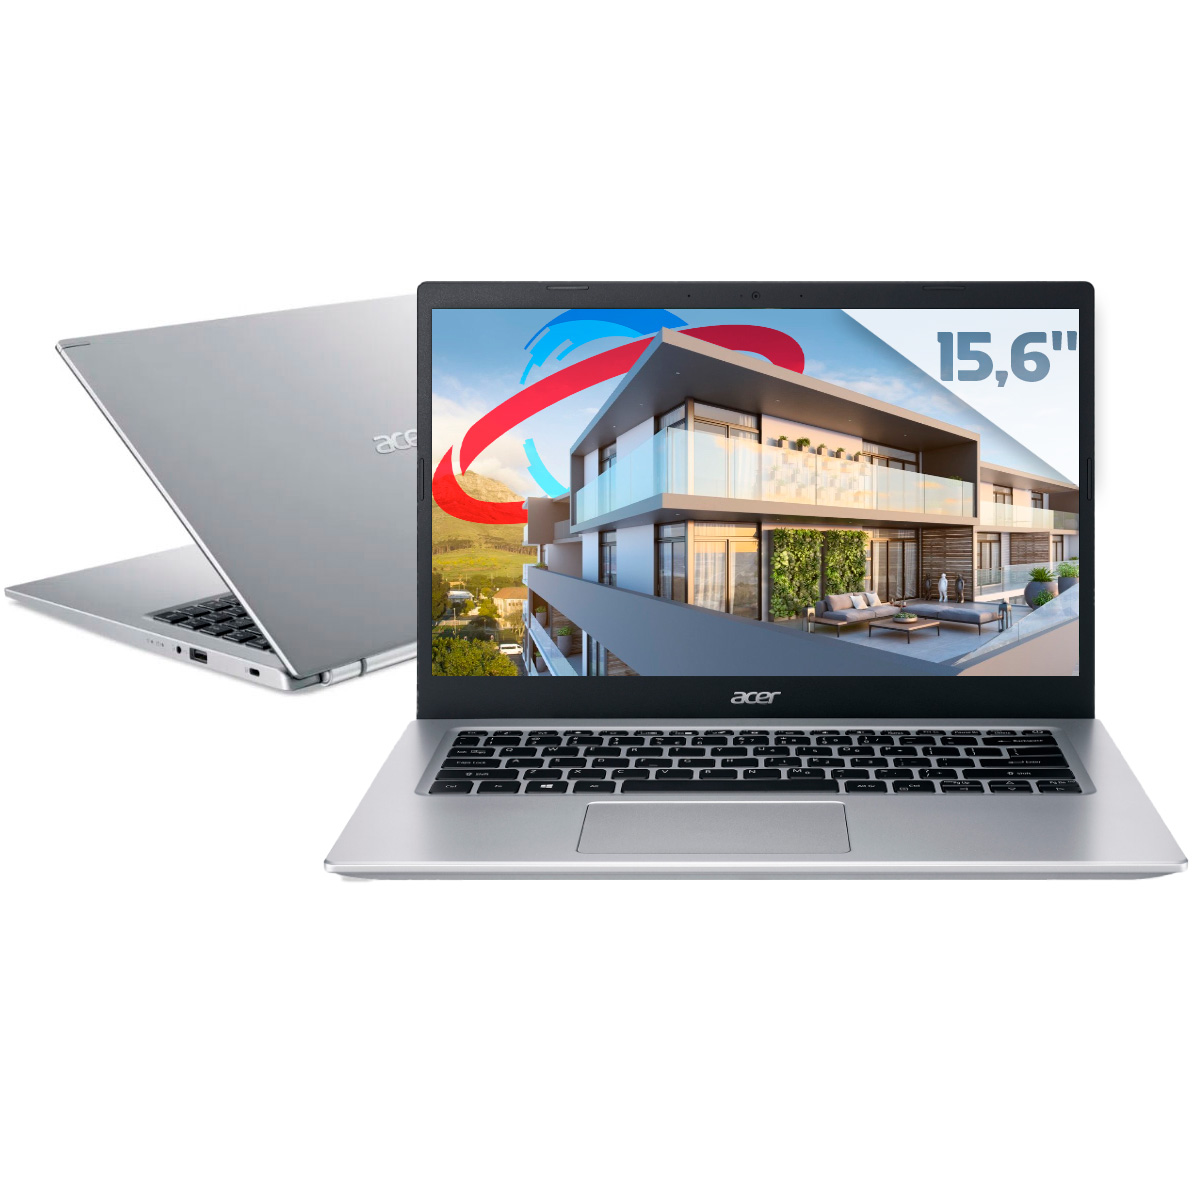 Notebook Acer Aspire A515-56G-519A - Intel i5 1135G7, RAM 8GB, SSD 256GB, GeForce MX350, Tela 15,6